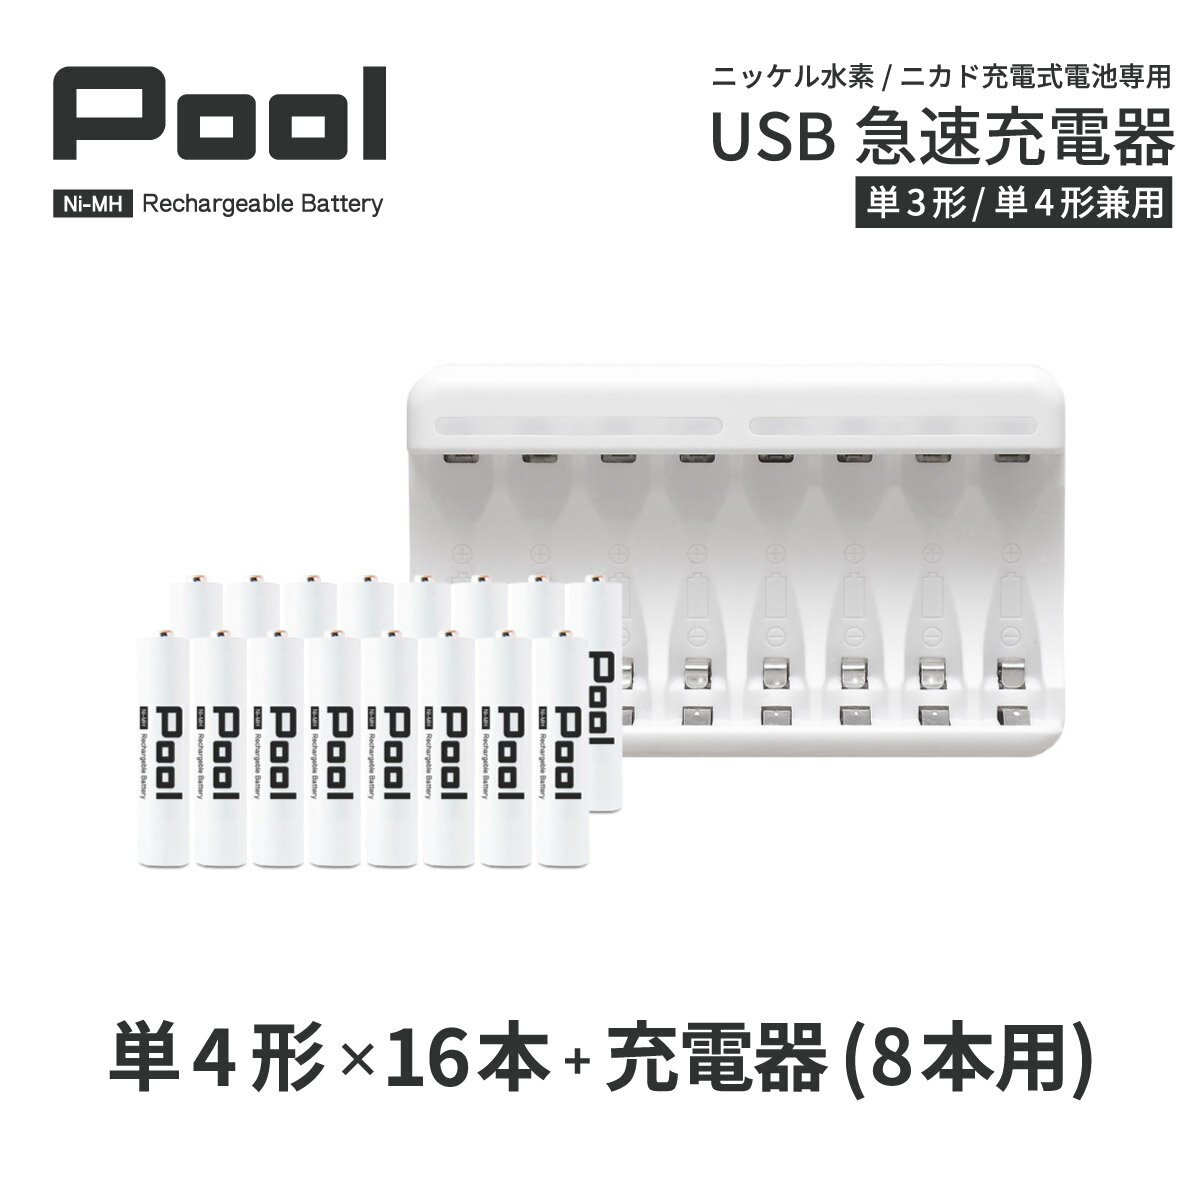 P4 [dr [d [dZbgP4` 16{USB[d̃Zbg USB }[d Gl[v 𒴂e jbPfdr Pool v[ [dr P4lR|X